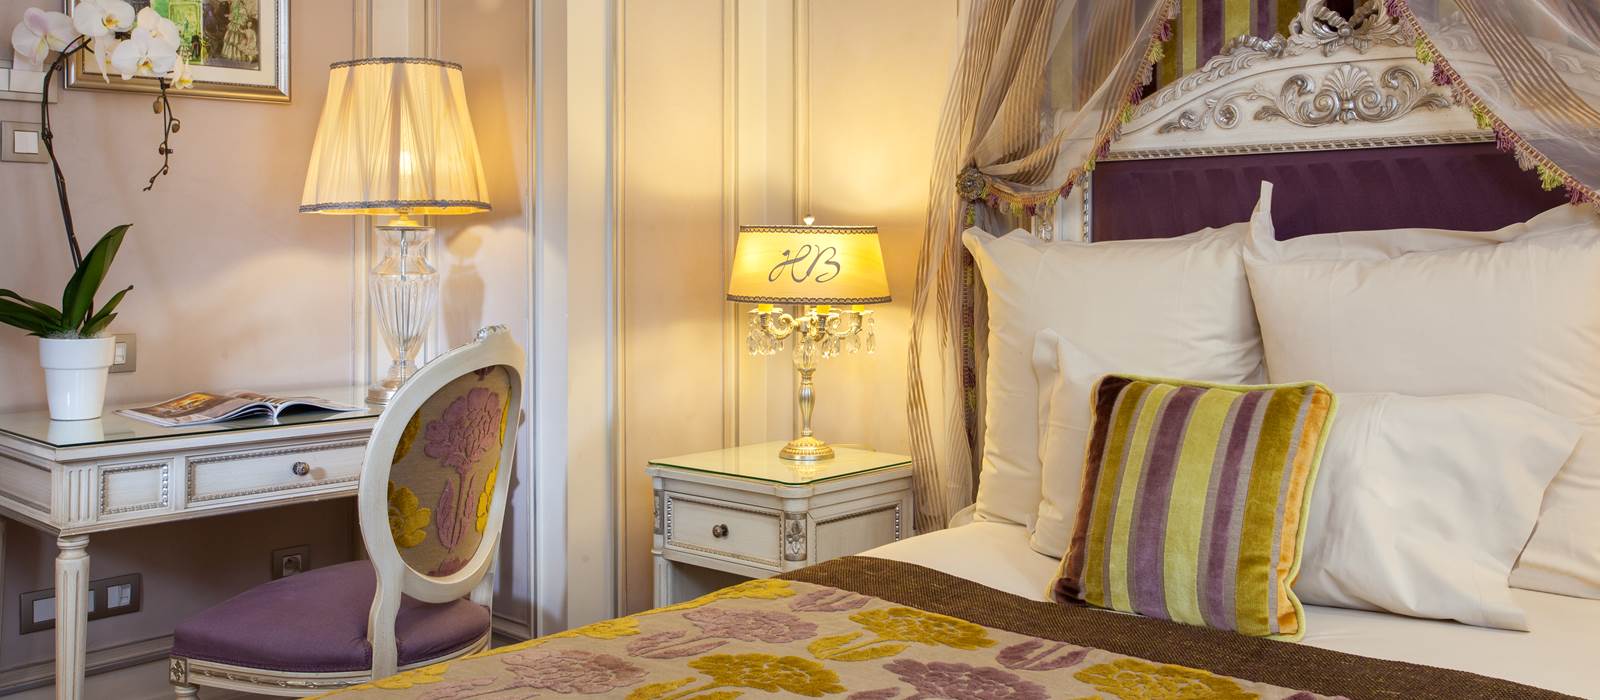 Zimmer Hotel Balzac Paris